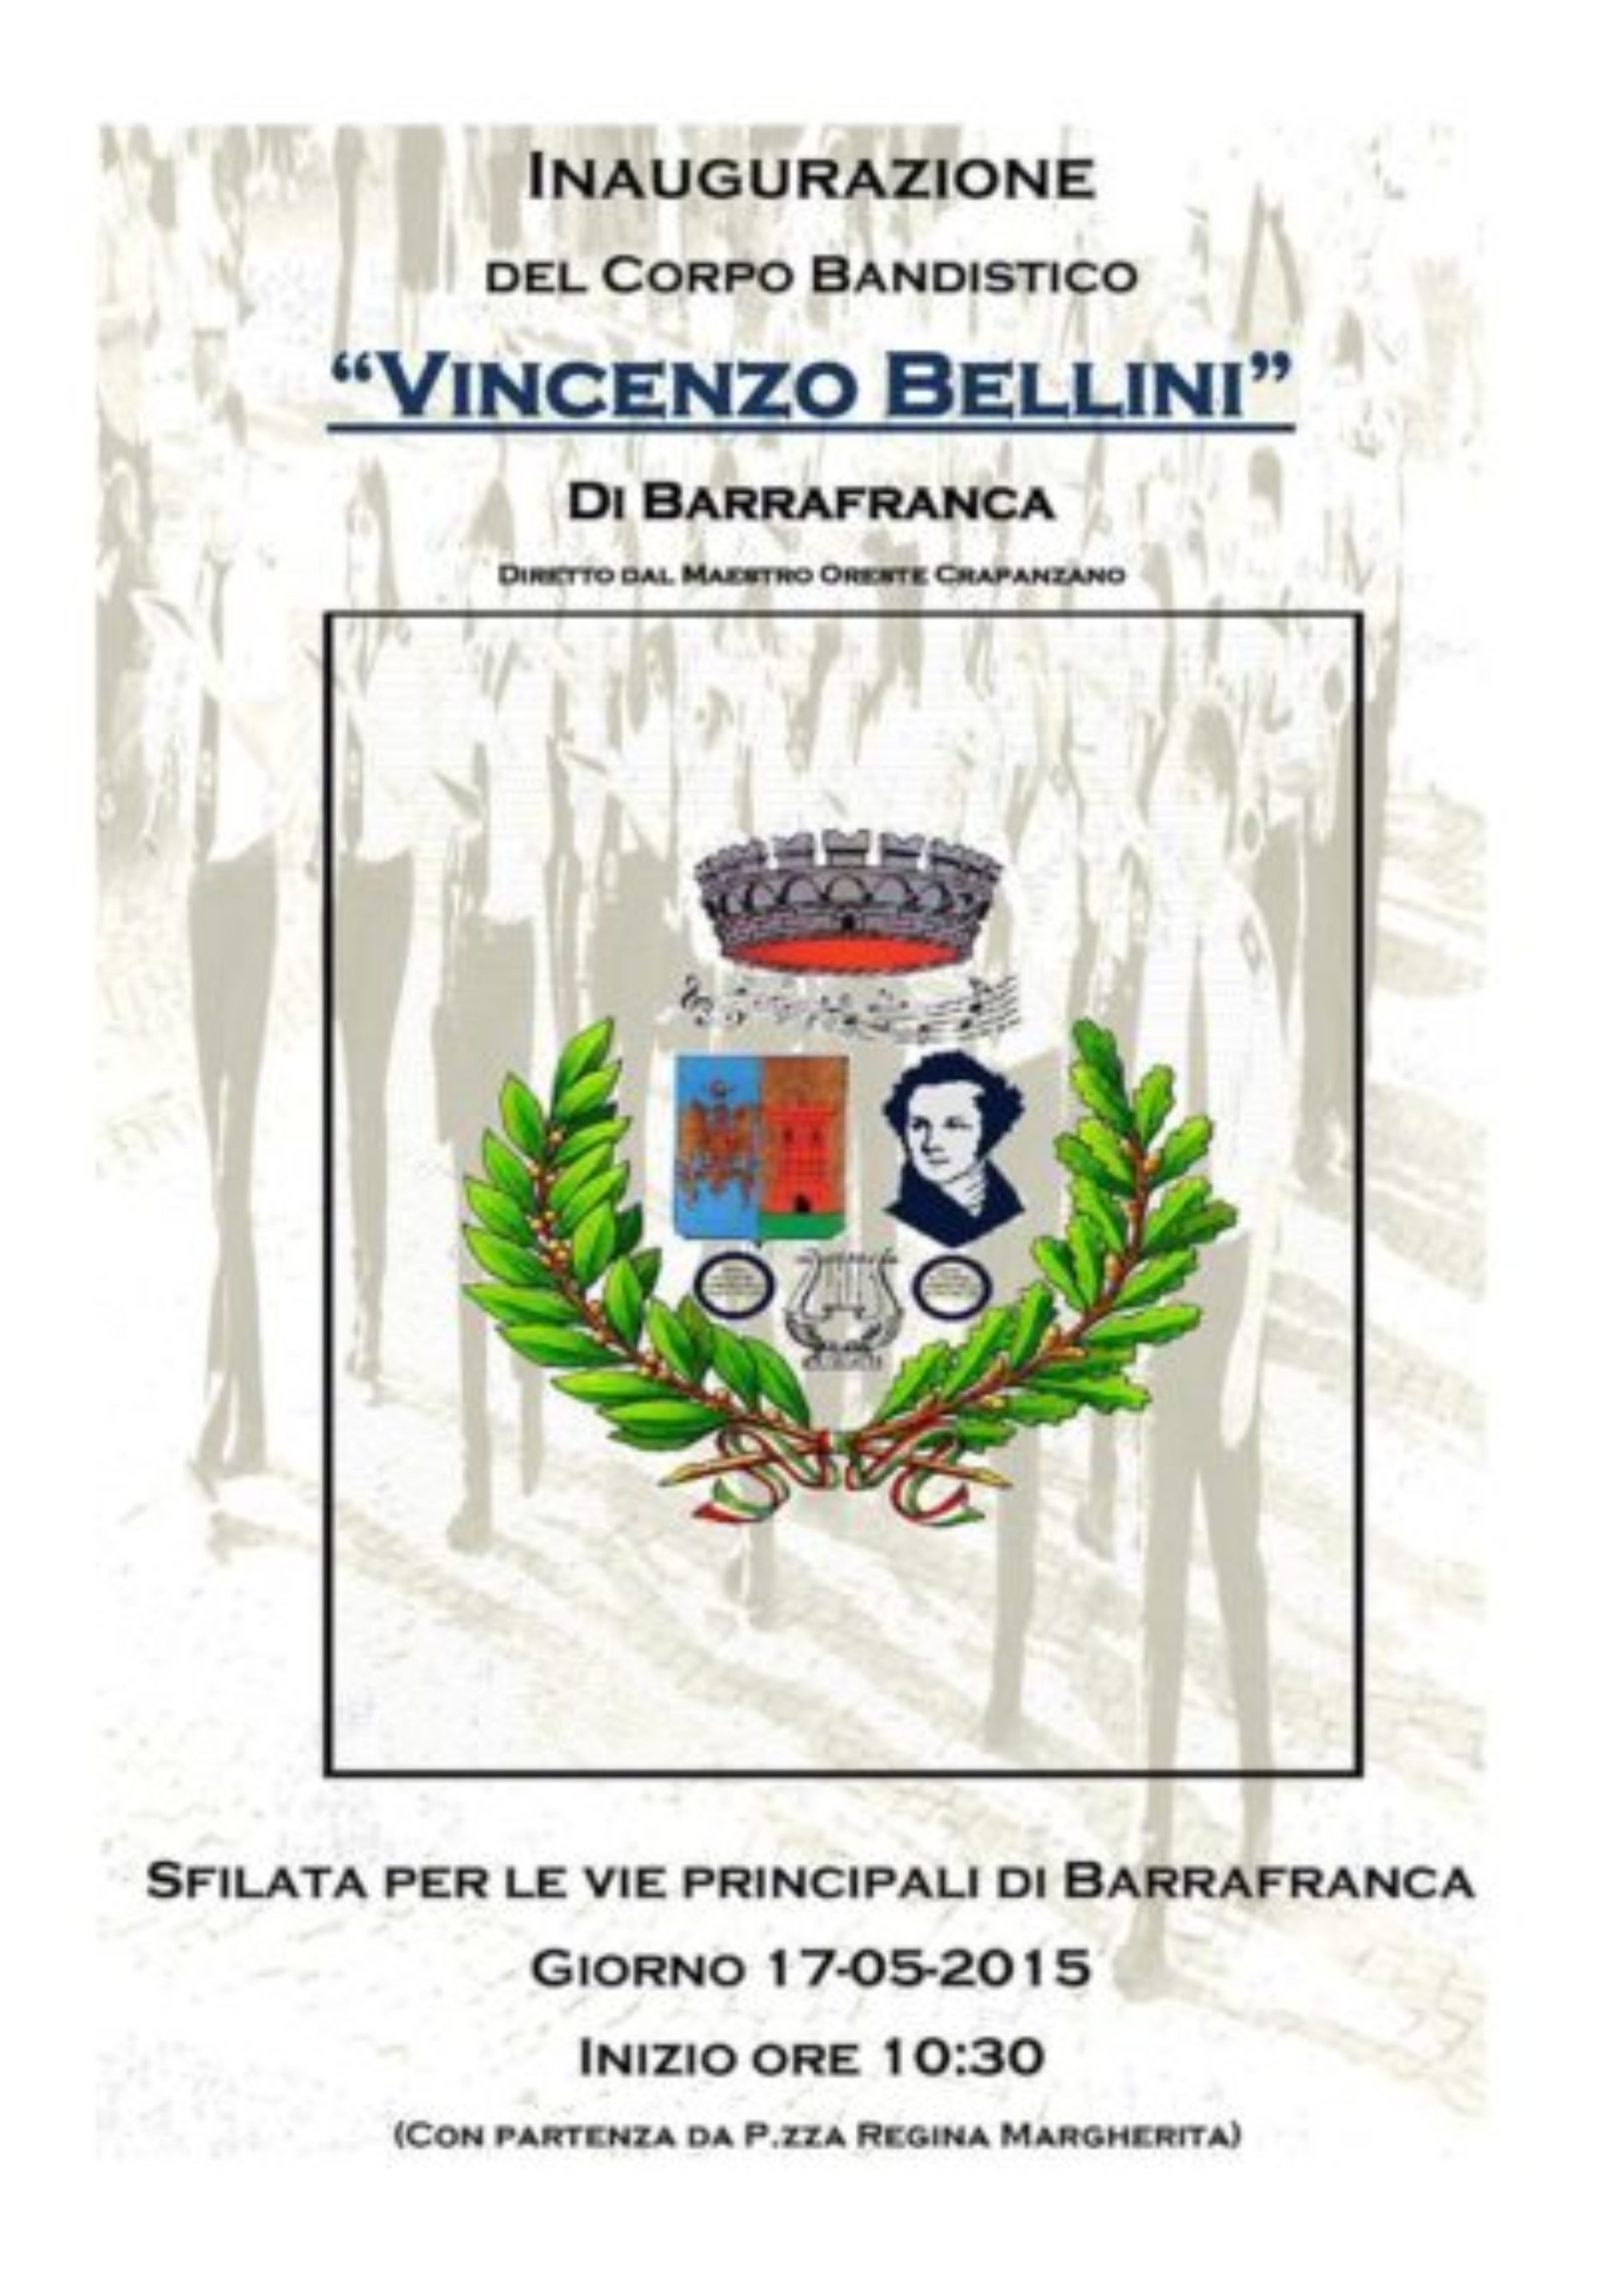 Inaugurazione del Corpo Bandistico “VINCENZO BELLINI” città di Barrafranca